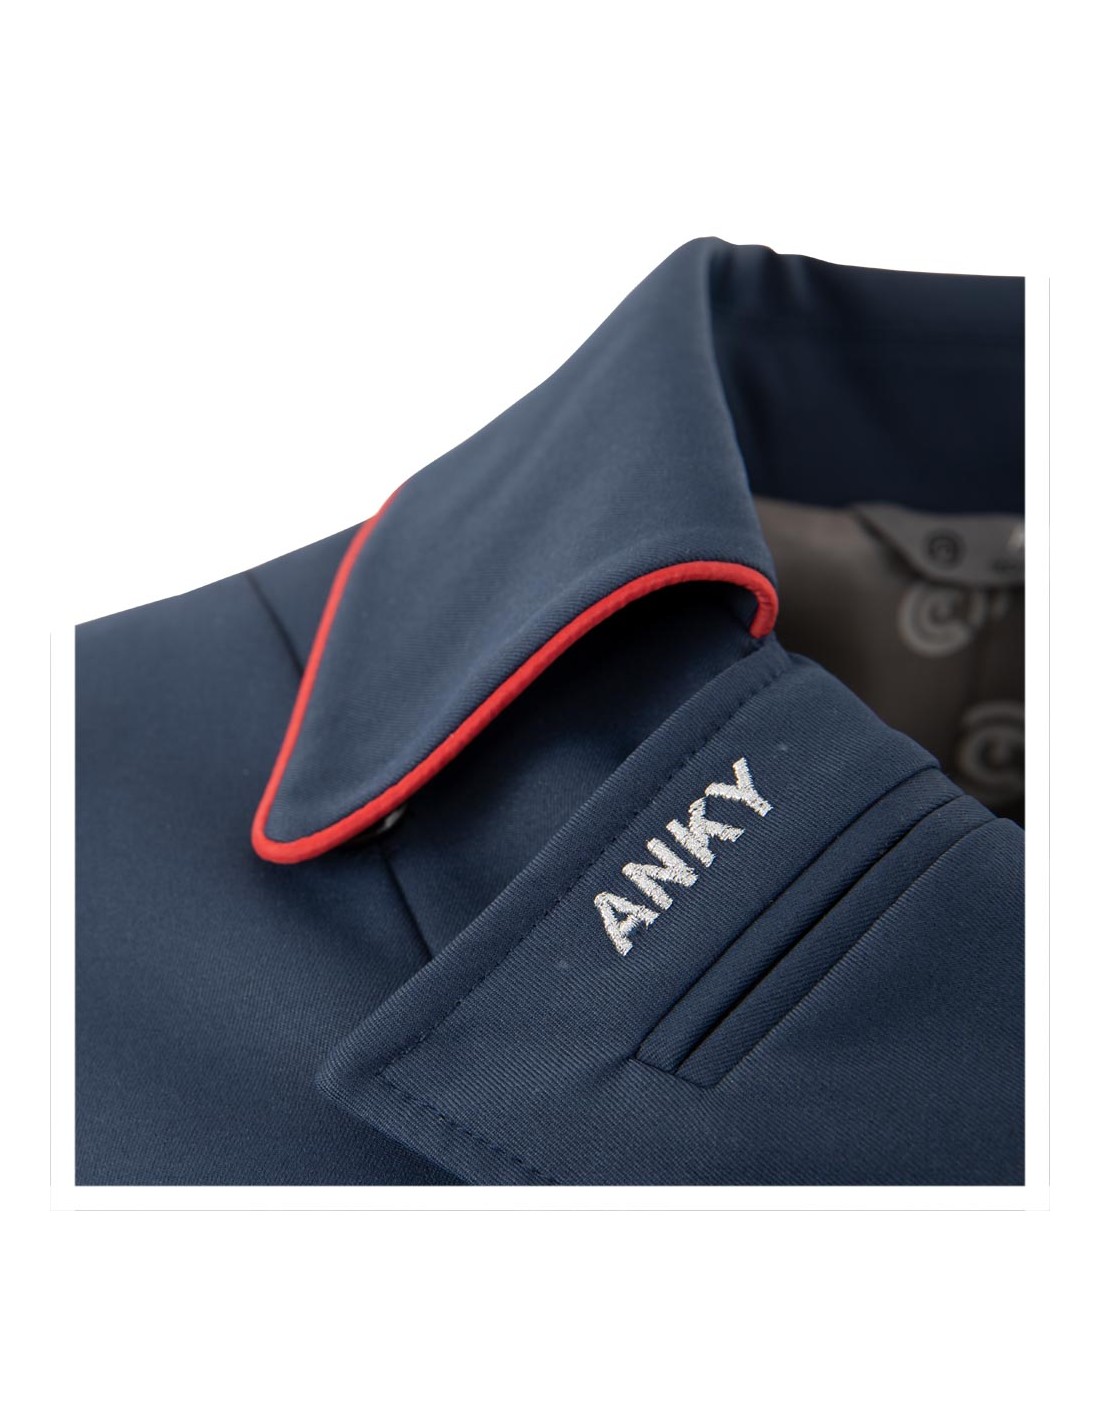 ANKY® Sleeveless Polo Shirt ATC201202